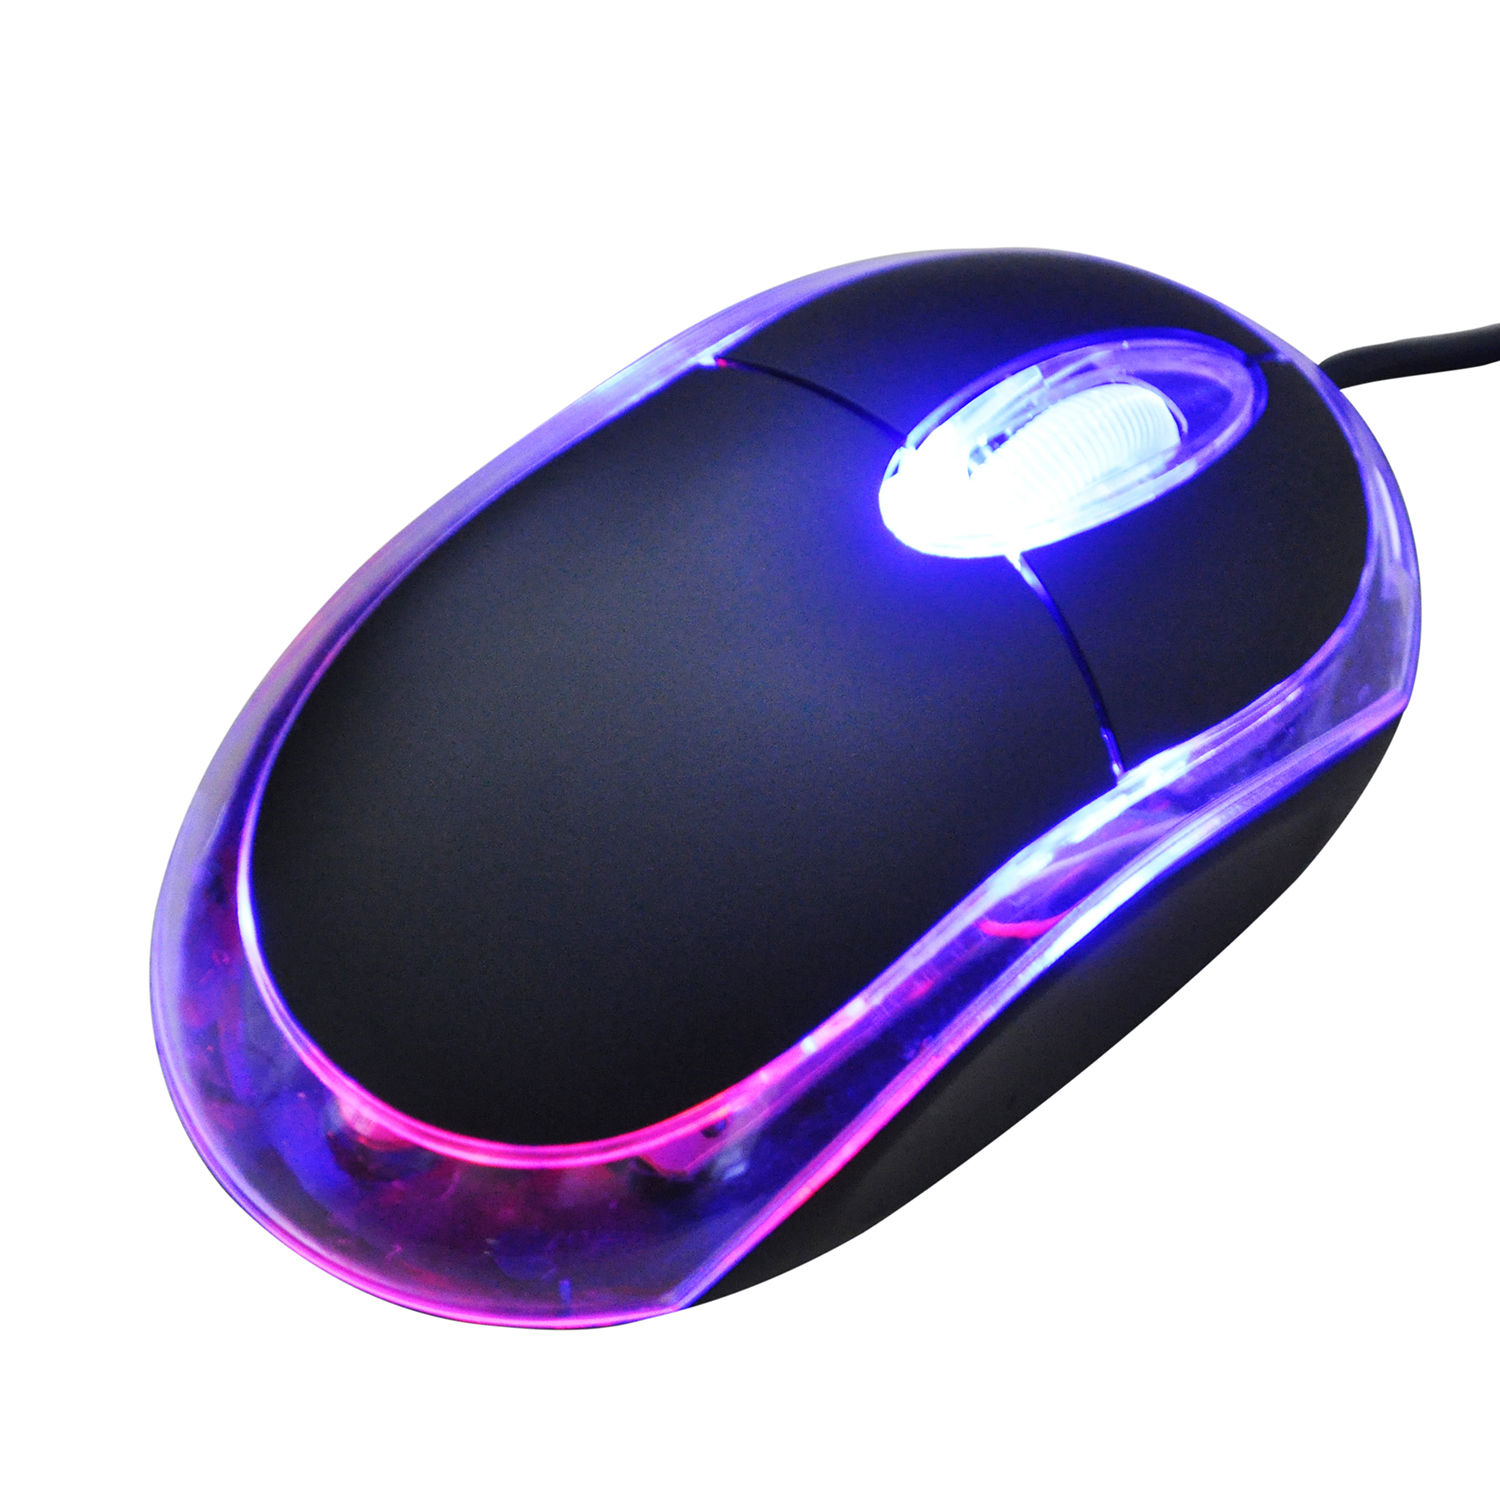 Компьютерные мыши для ноутбуков. Мышка PC Mouse. Мышь компьютерная проводная g5 /. Мышка проводная с подсветкой ДНС. Необычные компьютерные мышки.